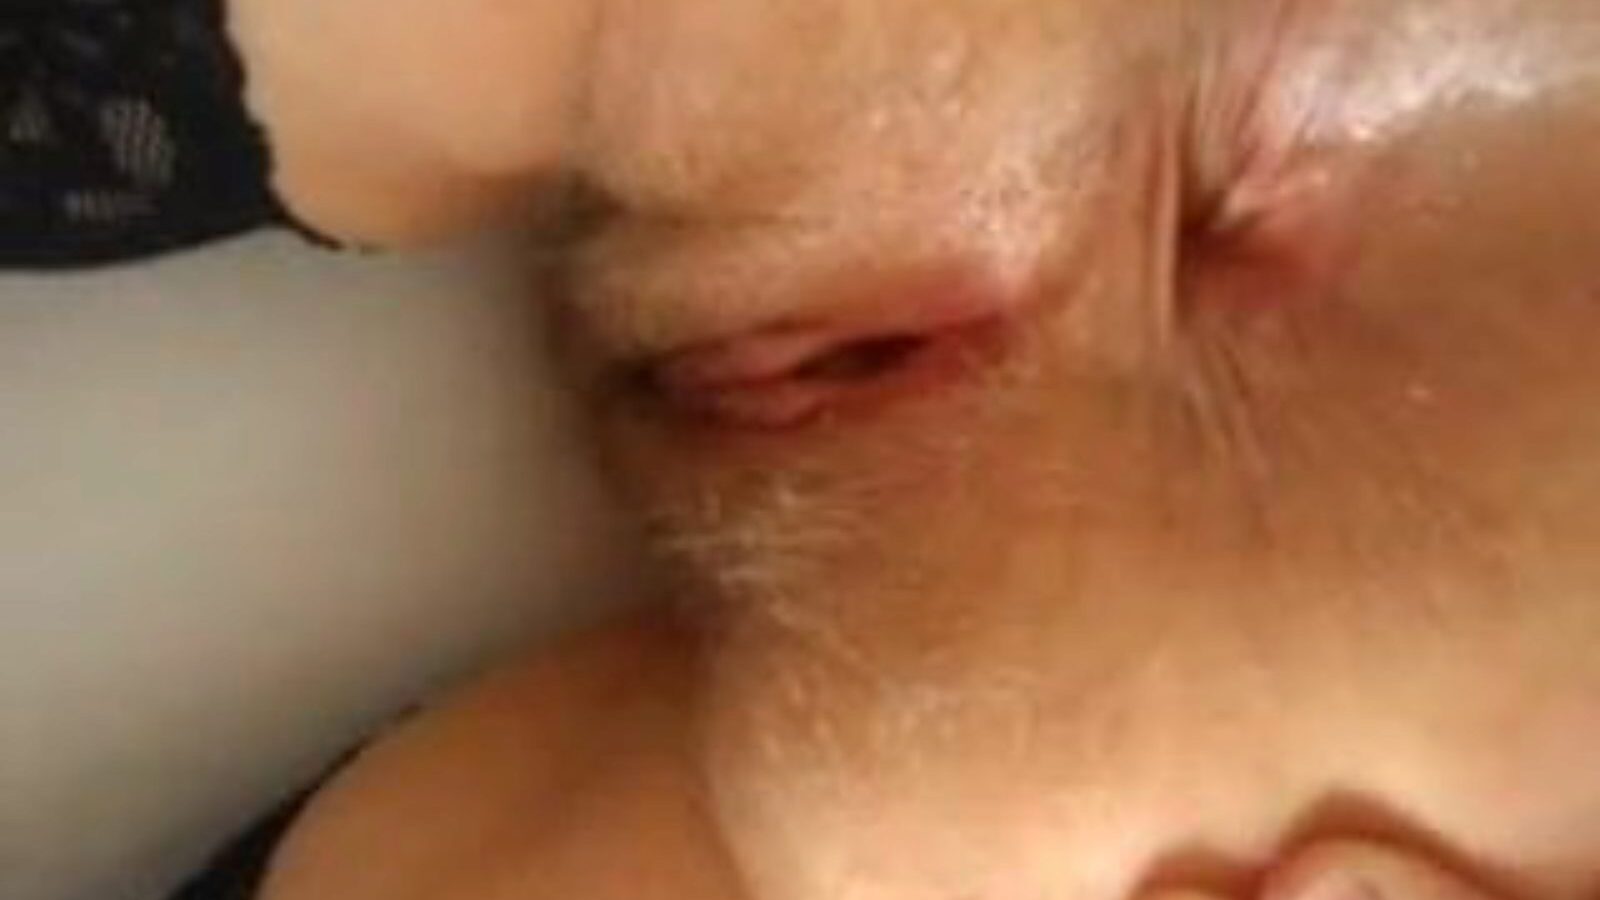 spread ass: spread open & mobile ass porn video - xhamster bekijk spread ass tube bang-out filmscène gratis op xhamster, met de verbazingwekkende schare van spread open mobile ass & open asshole porno afleveringssequenties